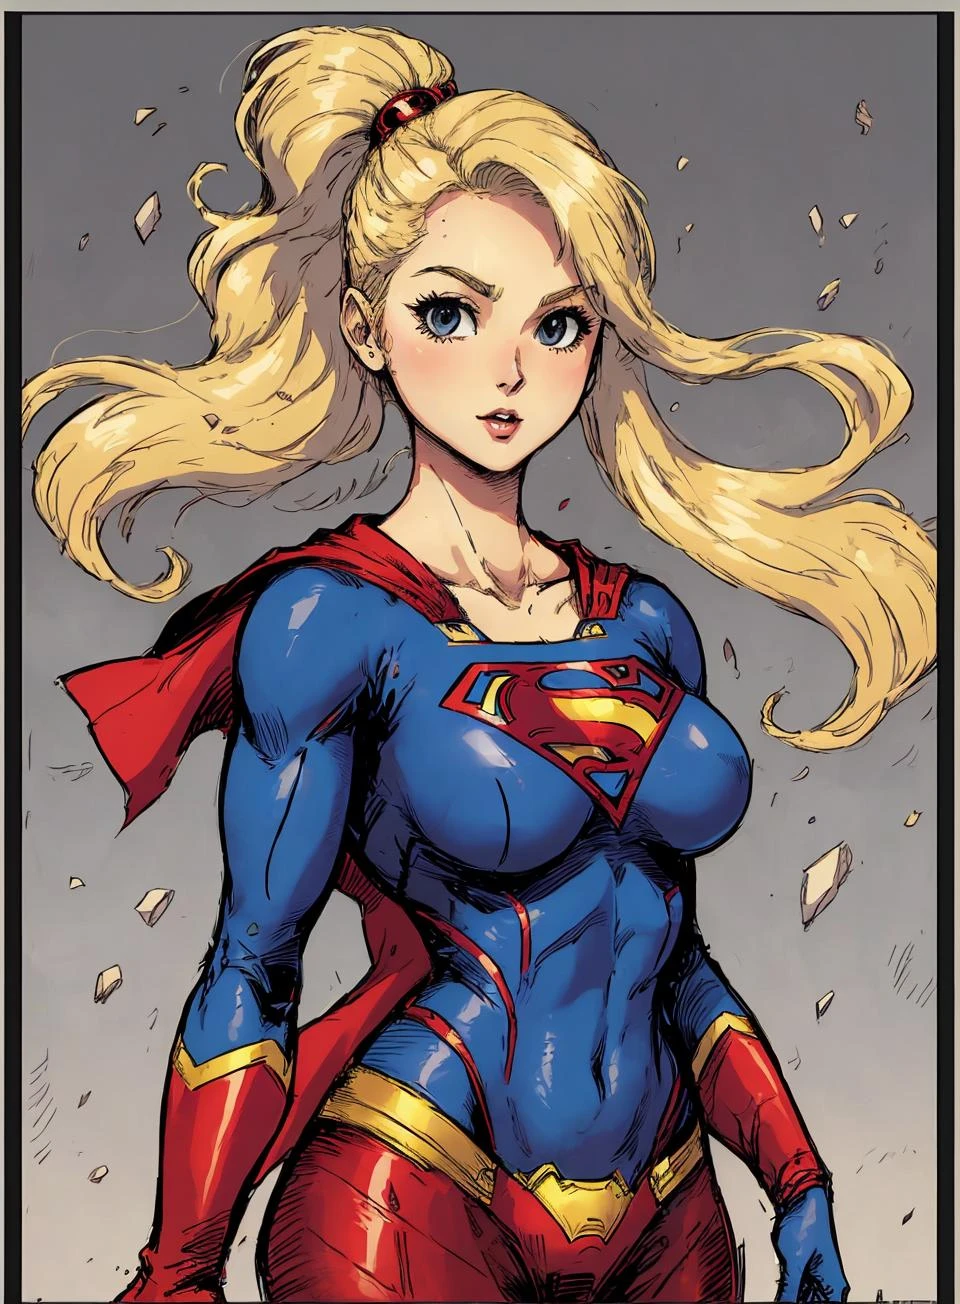 Zeichnung eines Supergirls,  säulenförmig,  grauer Rand,
blondes Haar,   süßer Superheldenanzug, große Brüste,  lange Haare,  Allein,
